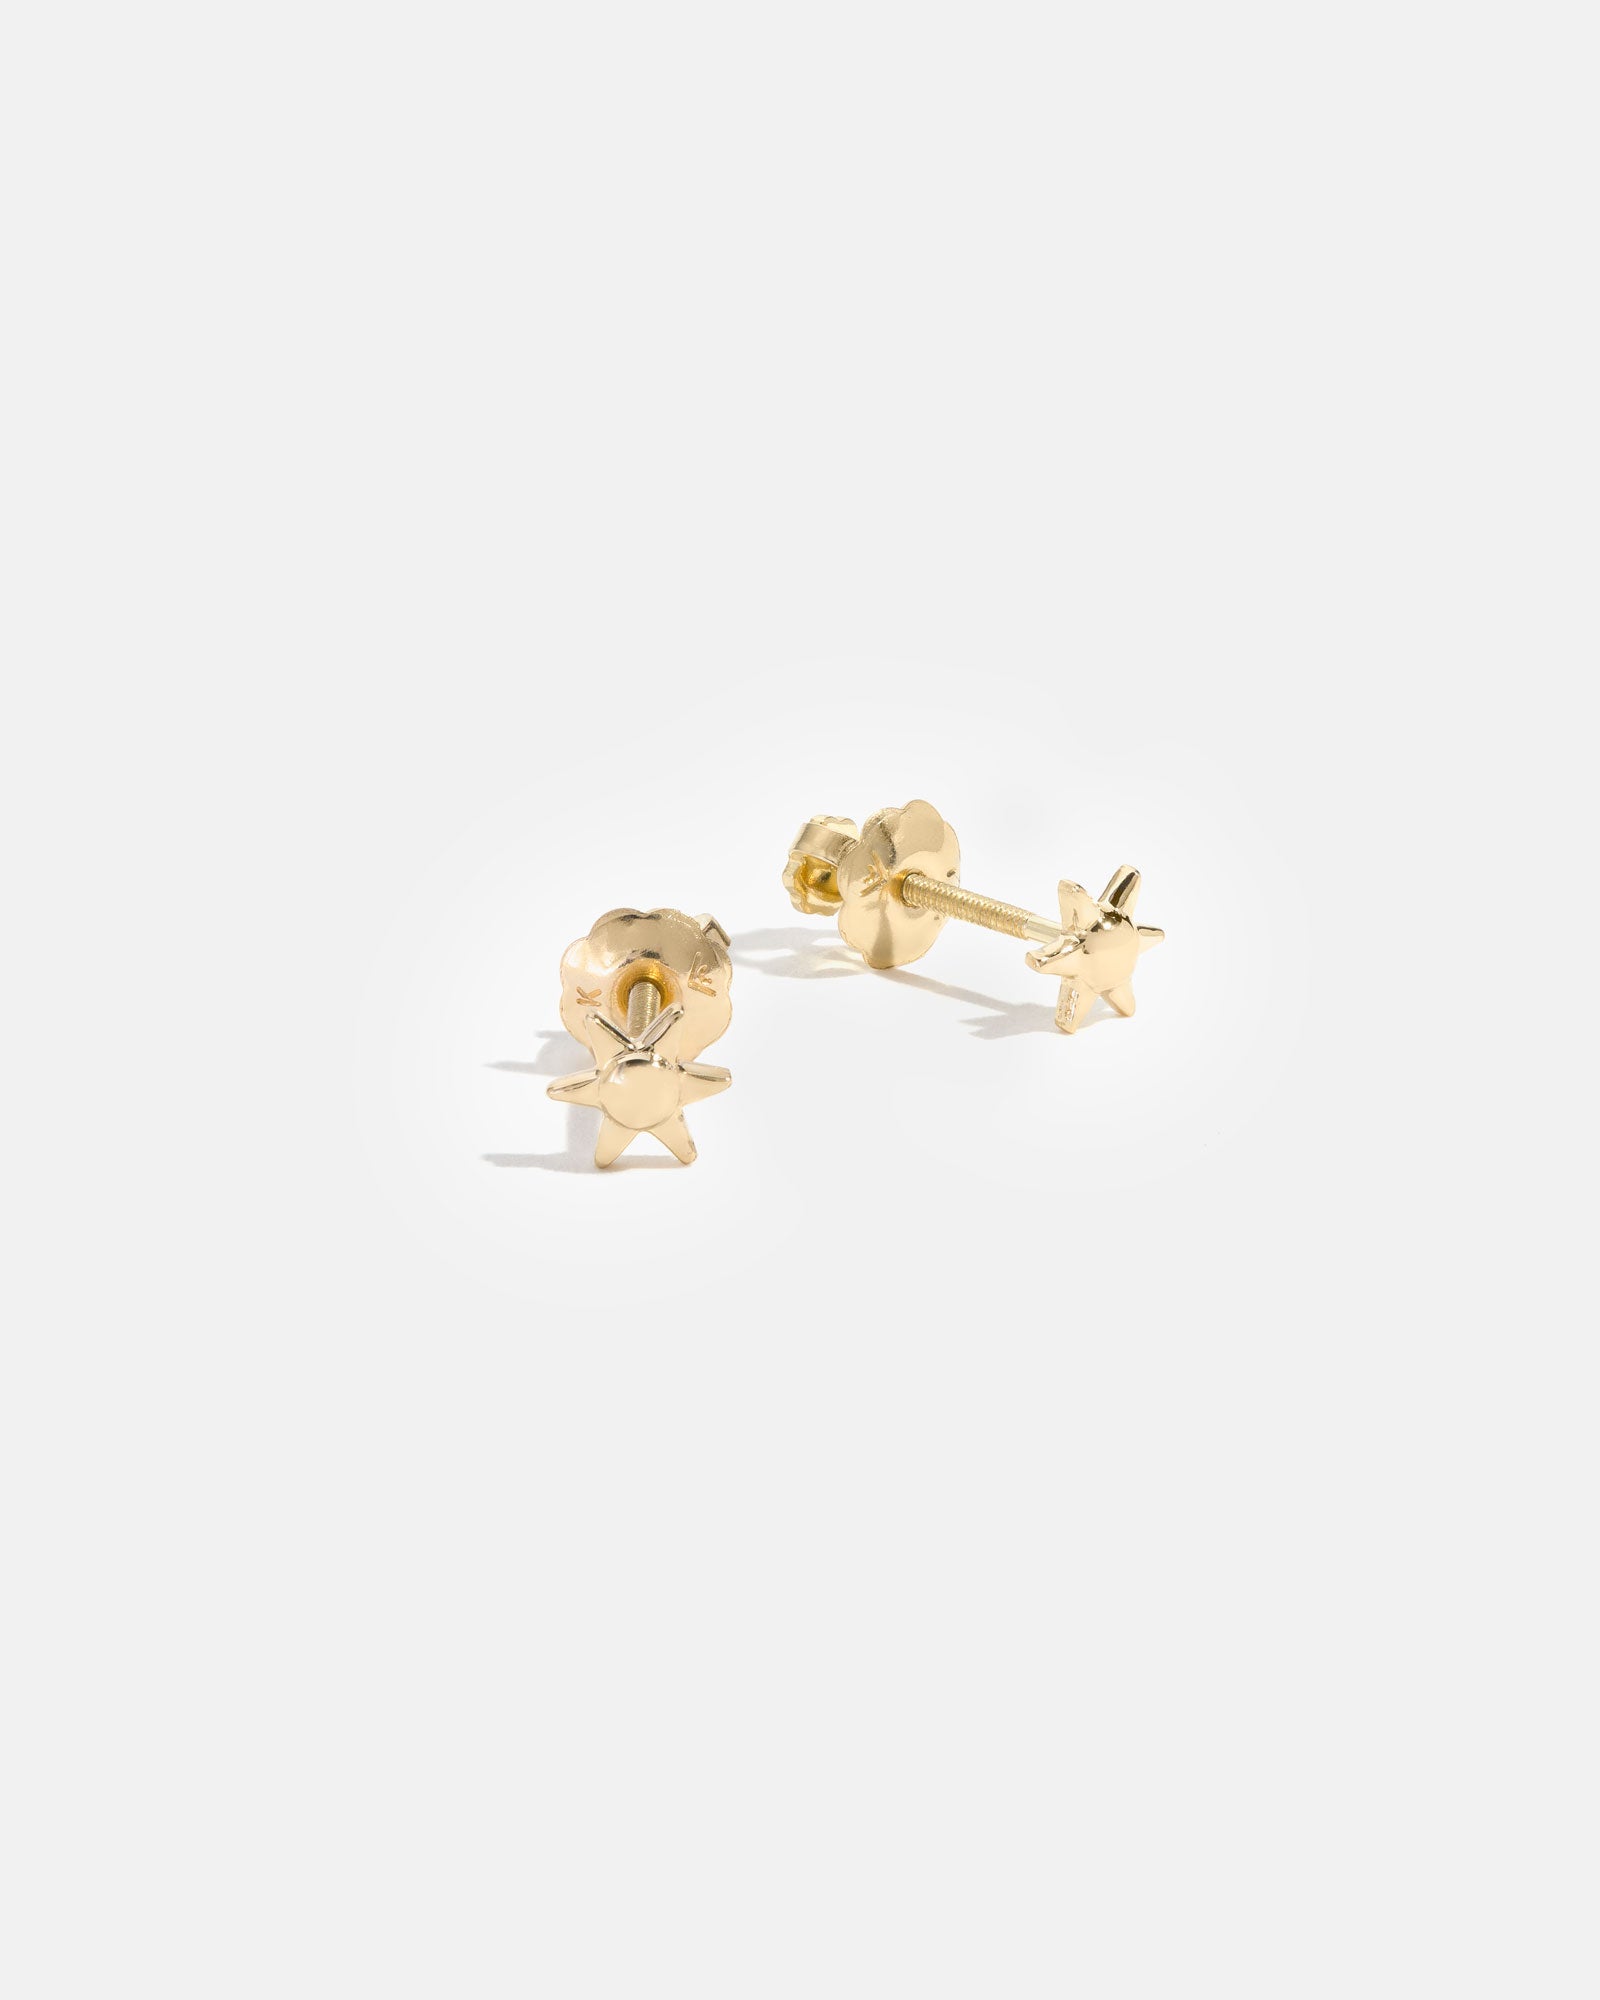 Mini Star Earrings in 14k Yellow Gold for Children